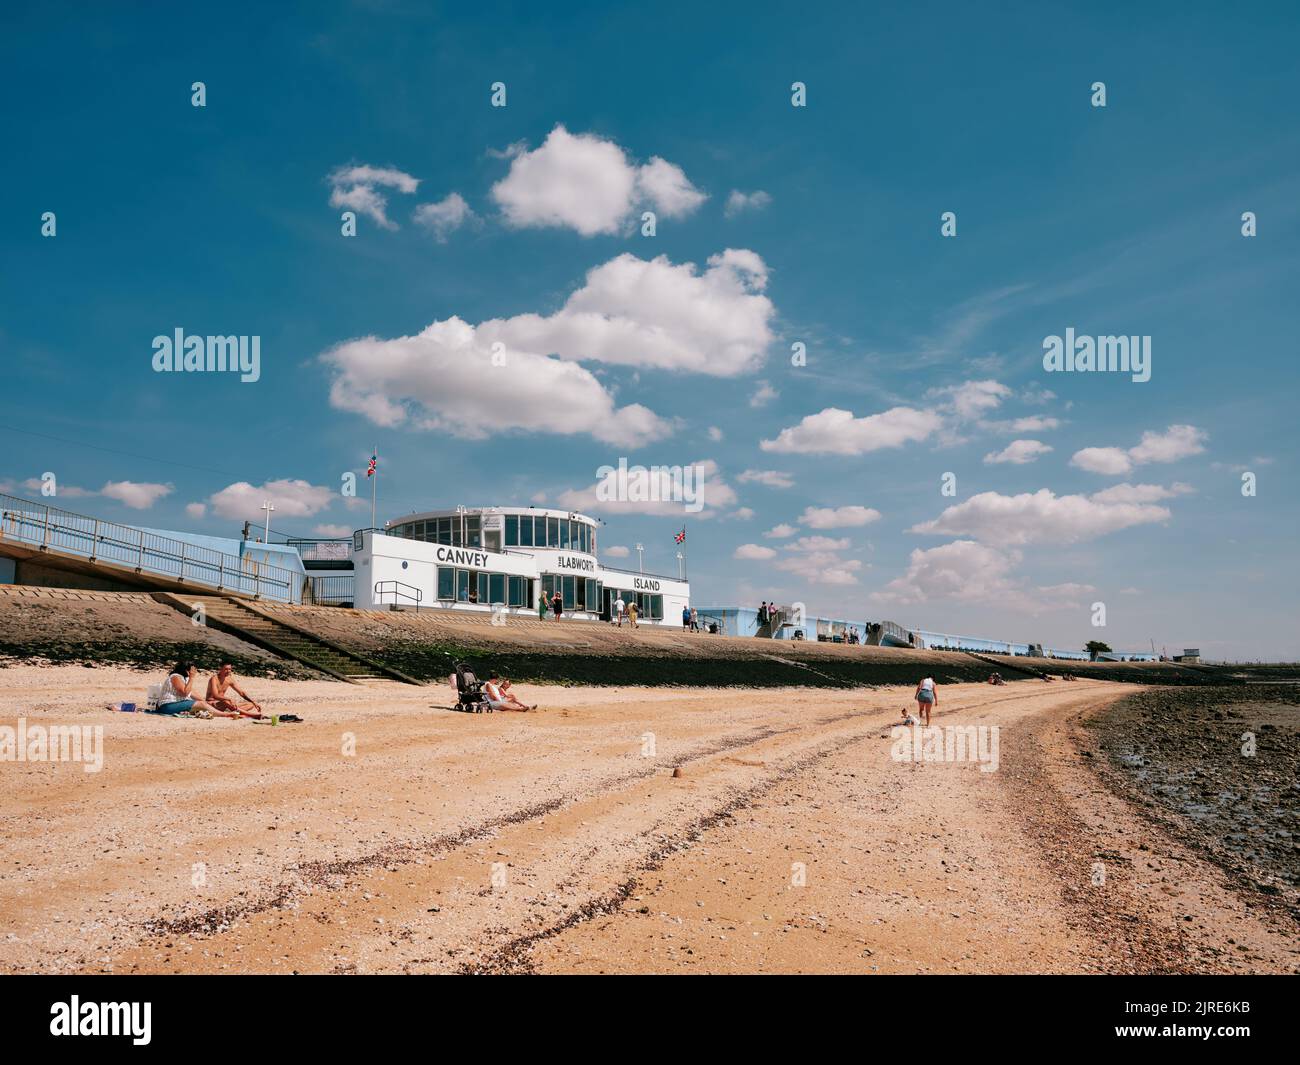 La arquitectura modernista del Labworth Cafe y la costa costera de verano con marea baja de Canvey Island, el estuario del Támesis, Essex, Inglaterra, Reino Unido Foto de stock